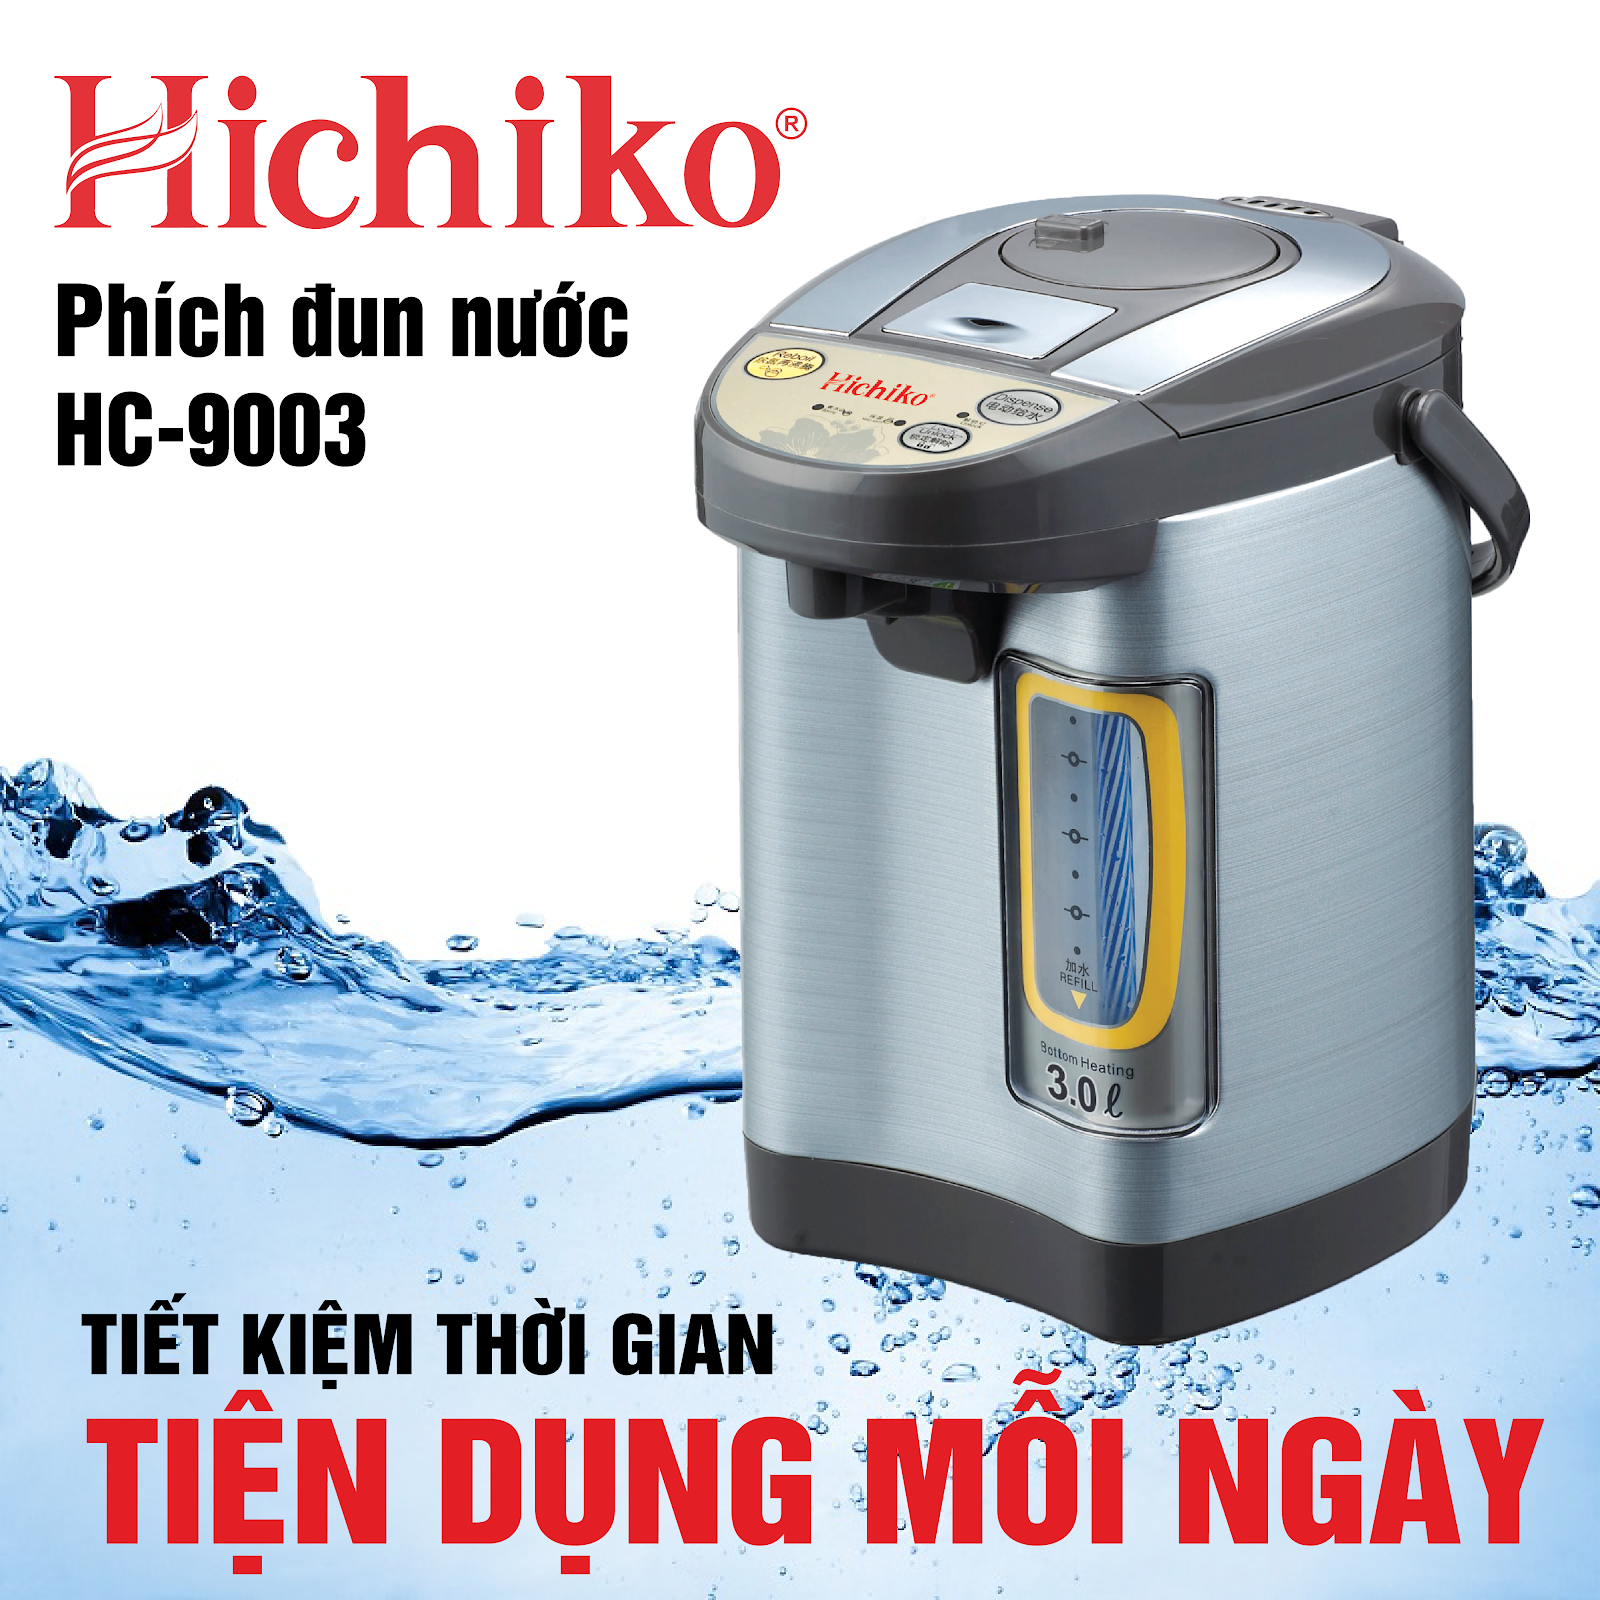 Phích đun nước Hichiko HC-9003 (Ảnh 1)